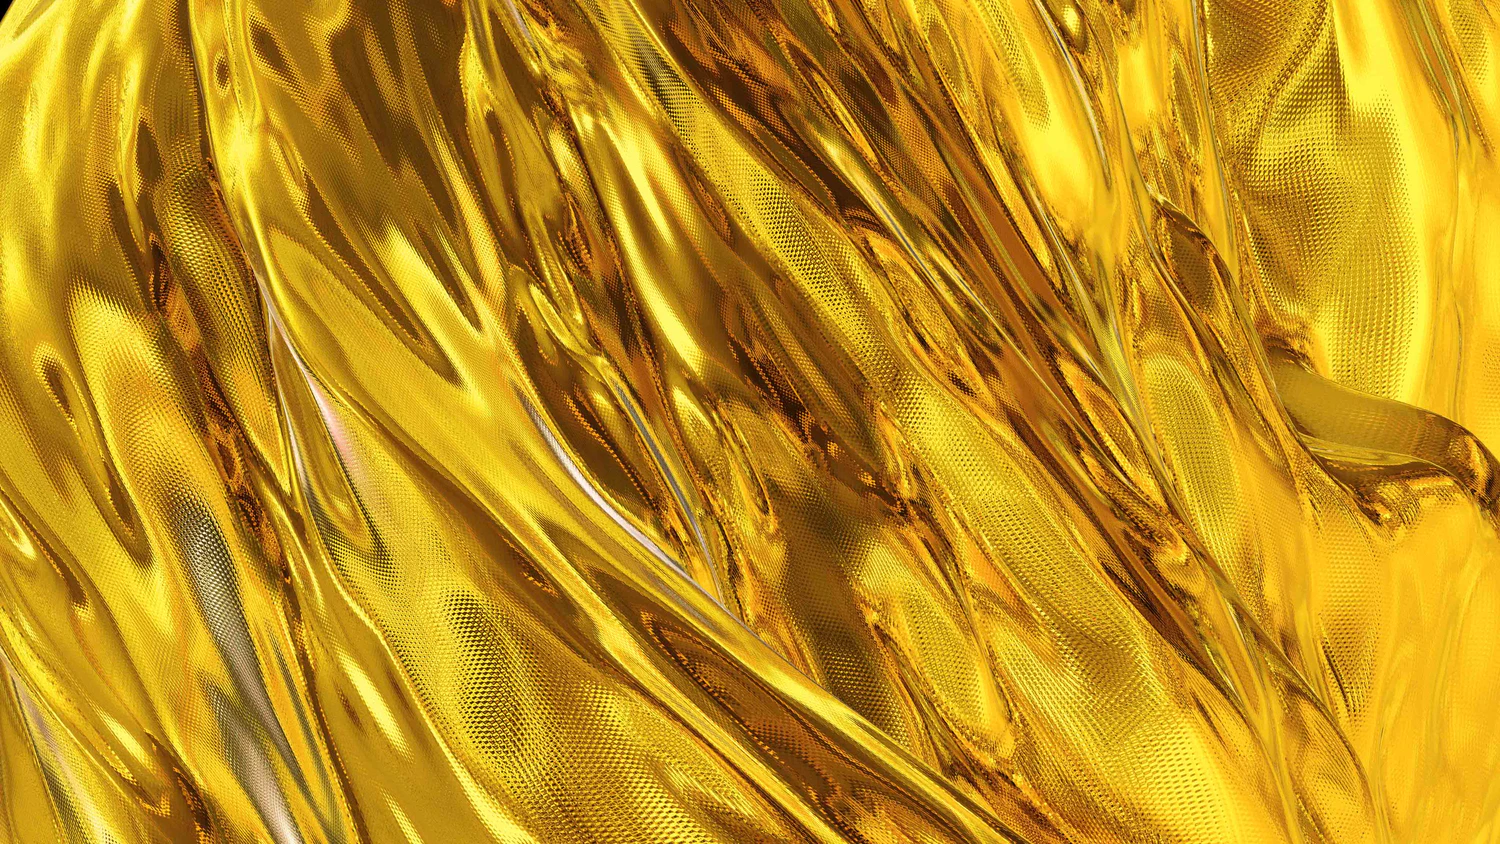 3706 6款高清金属质感纹理烫金色背景金色波浪图片设计素材下载Gold Backgrounds